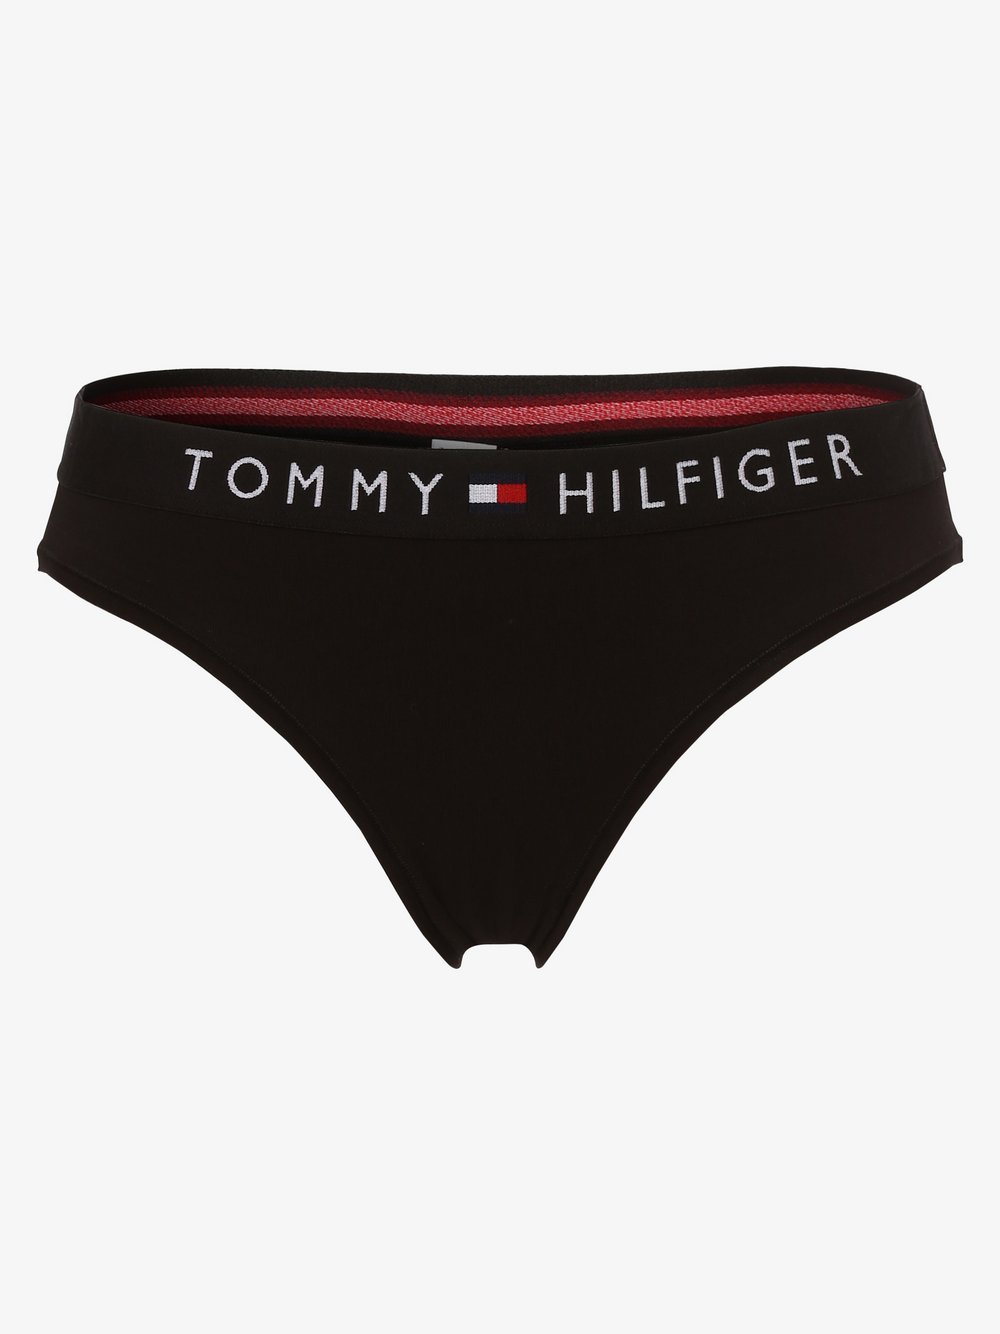 Tommy Hilfiger - Slipy damskie, czarny